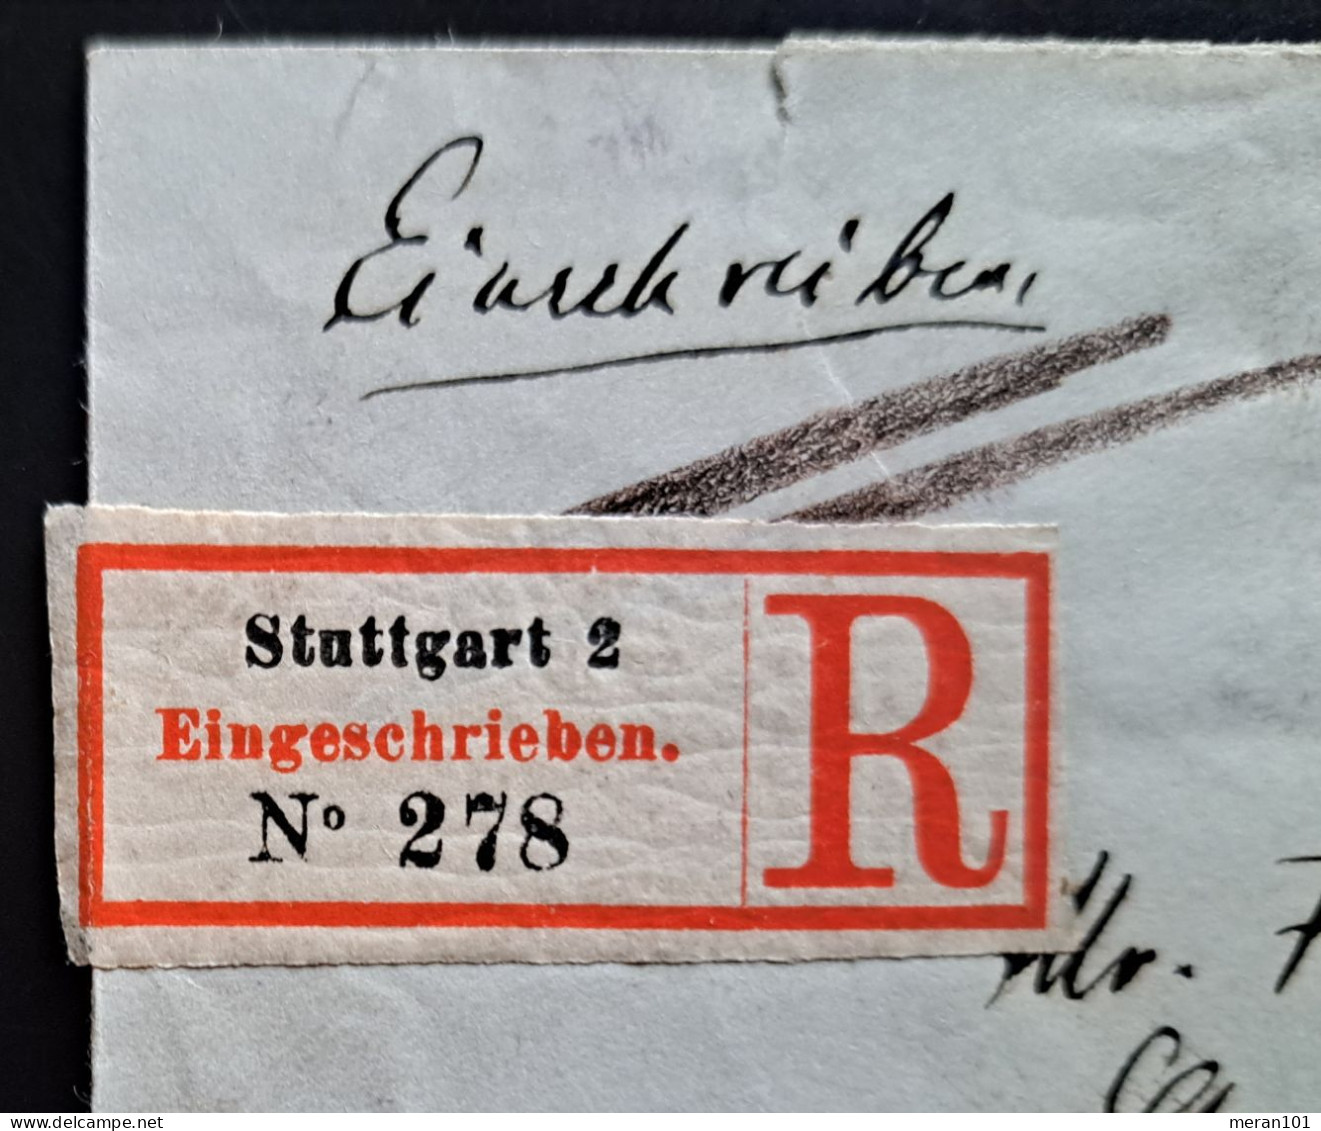 Württemberg 1889, Einschreibe Umschlag Stuttgart Nach Antwerpen, Zusatzfrankatu - Lettres & Documents